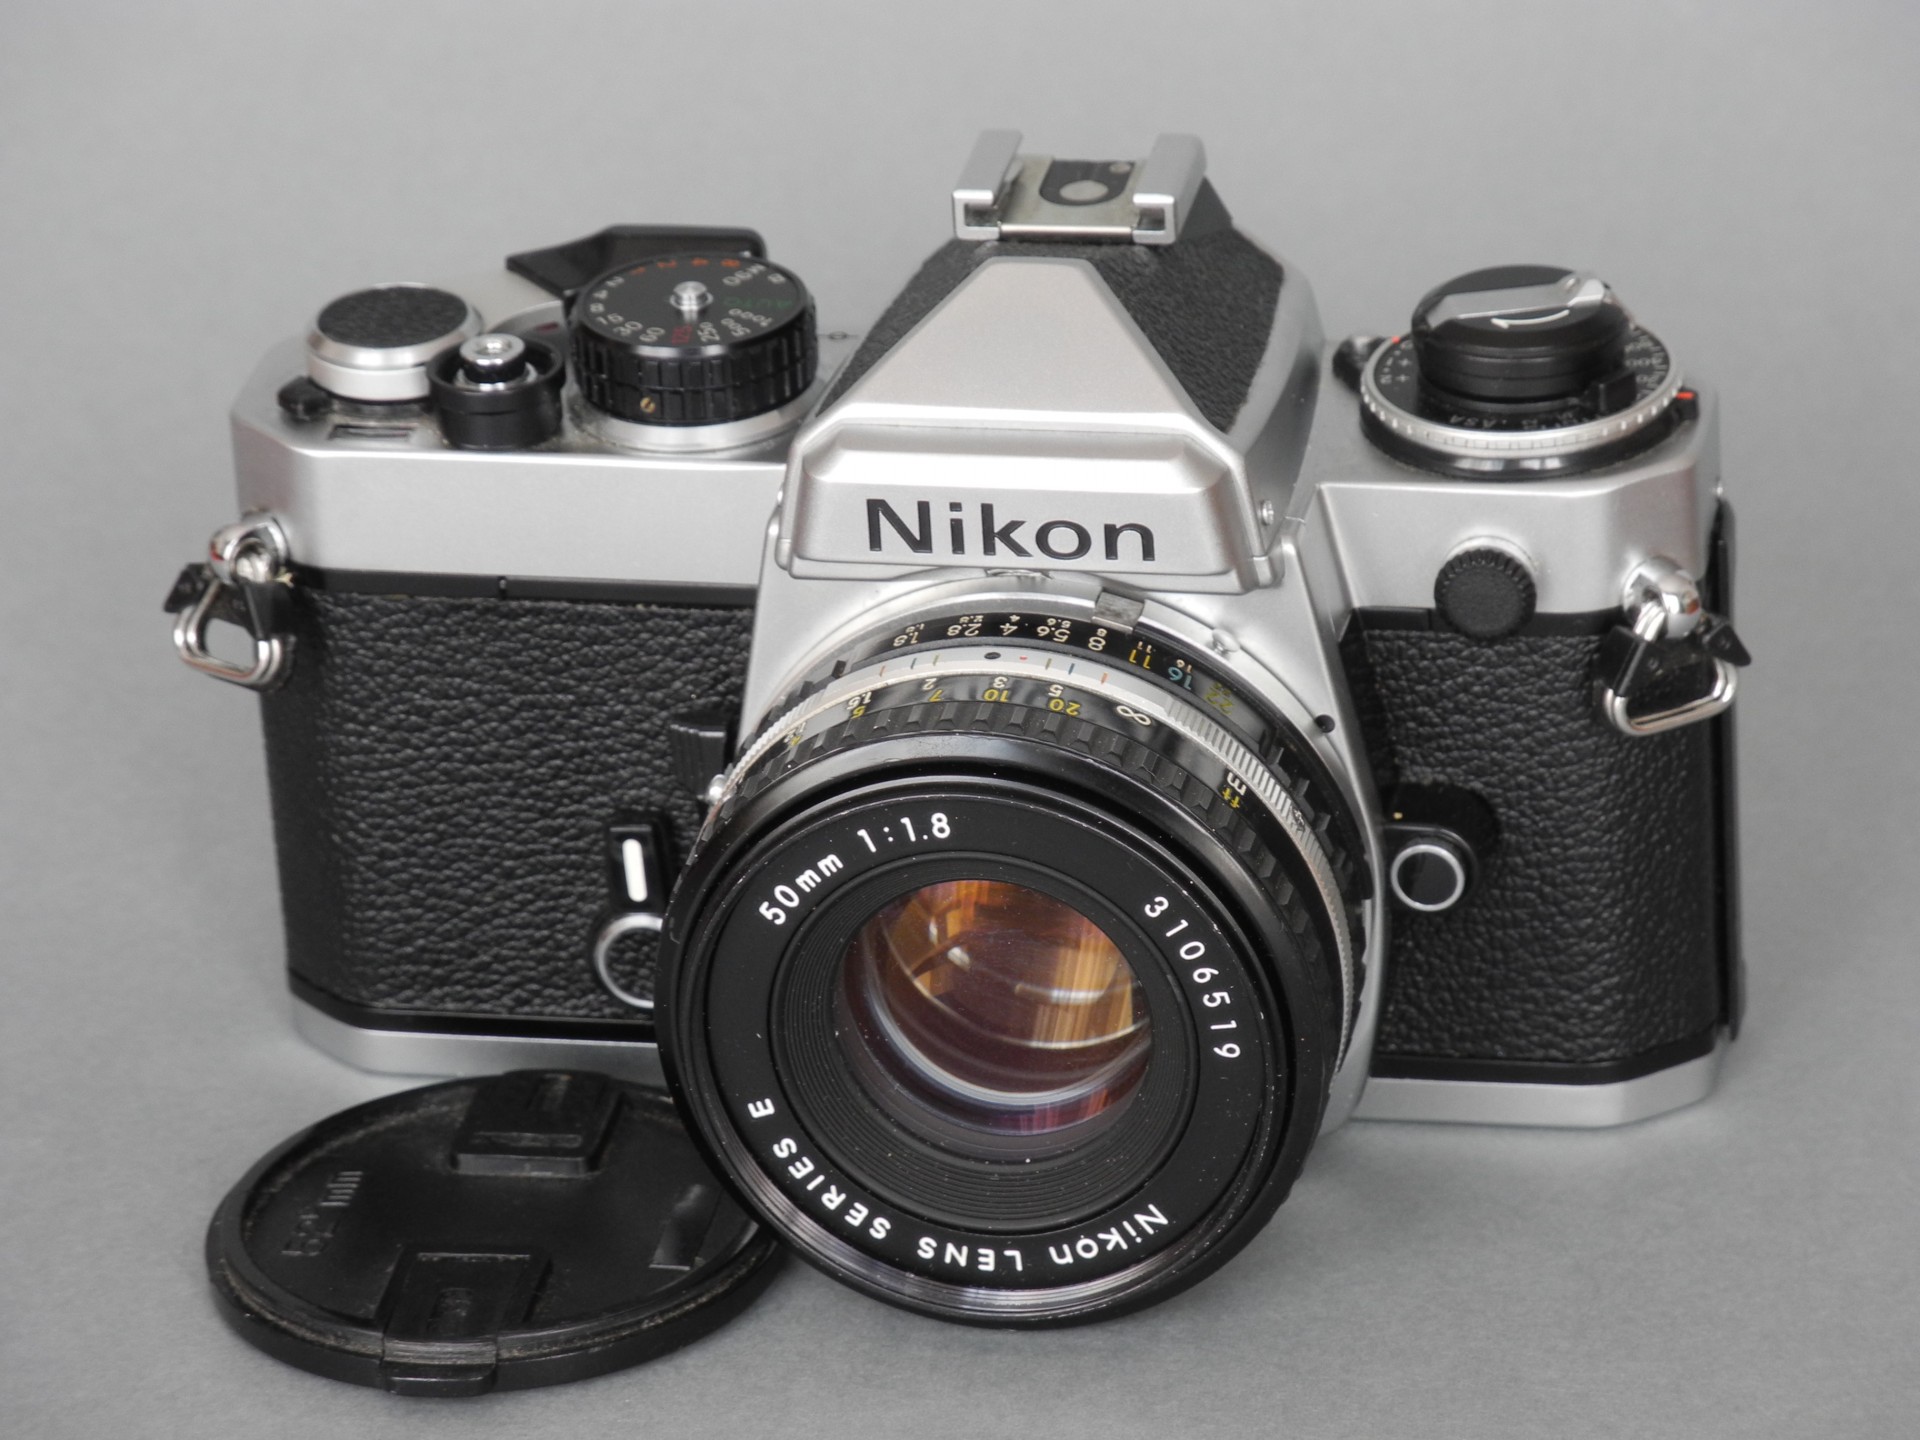 *Nikon FE film135 1978*